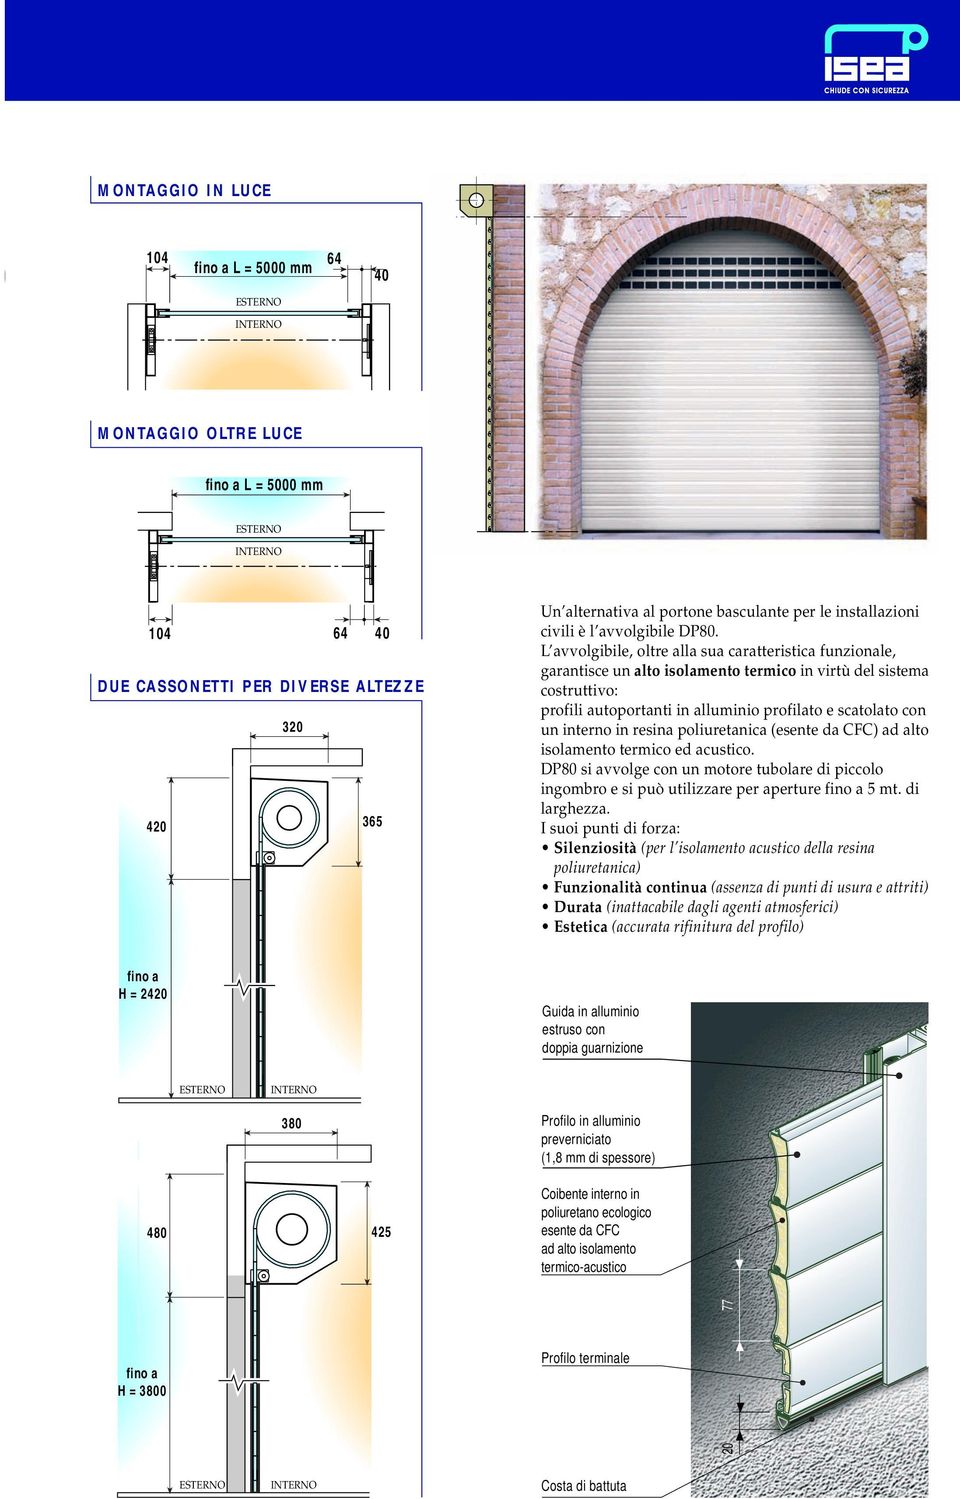 L avvolgibile, oltre alla sua caratteristica funzionale, garantisce un alto isolamento termico in virtù del sistema costruttivo: profili autoportanti in alluminio profilato e scatolato con un interno